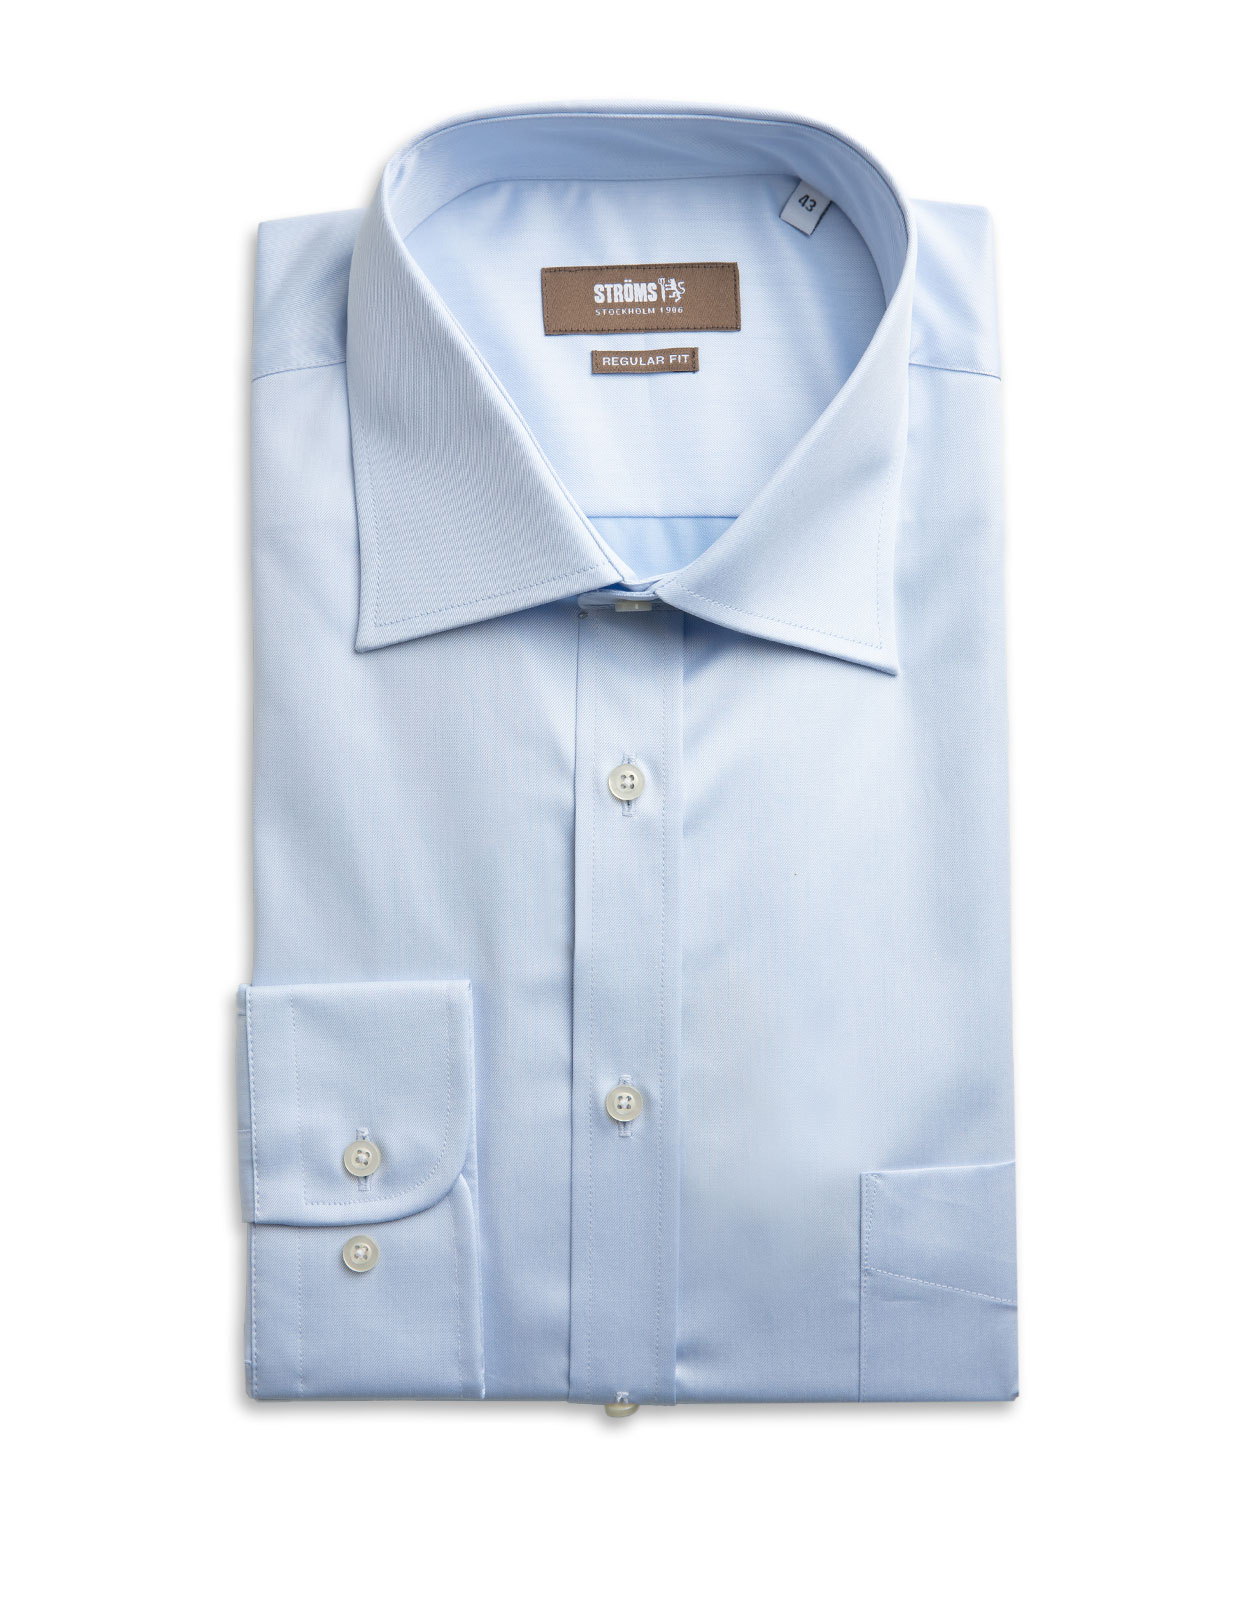 Regular Fit Cotton Shirt Light Blue Stl 39